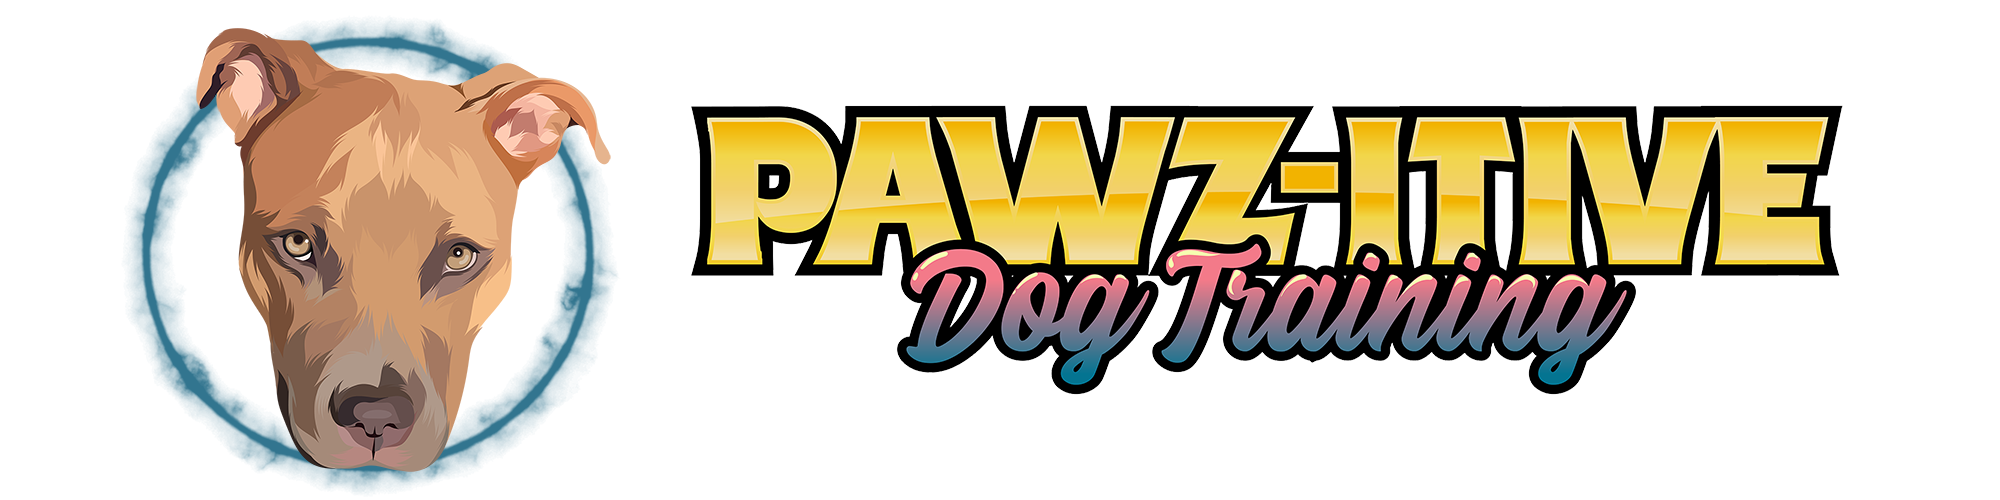 pawz-tive dog training